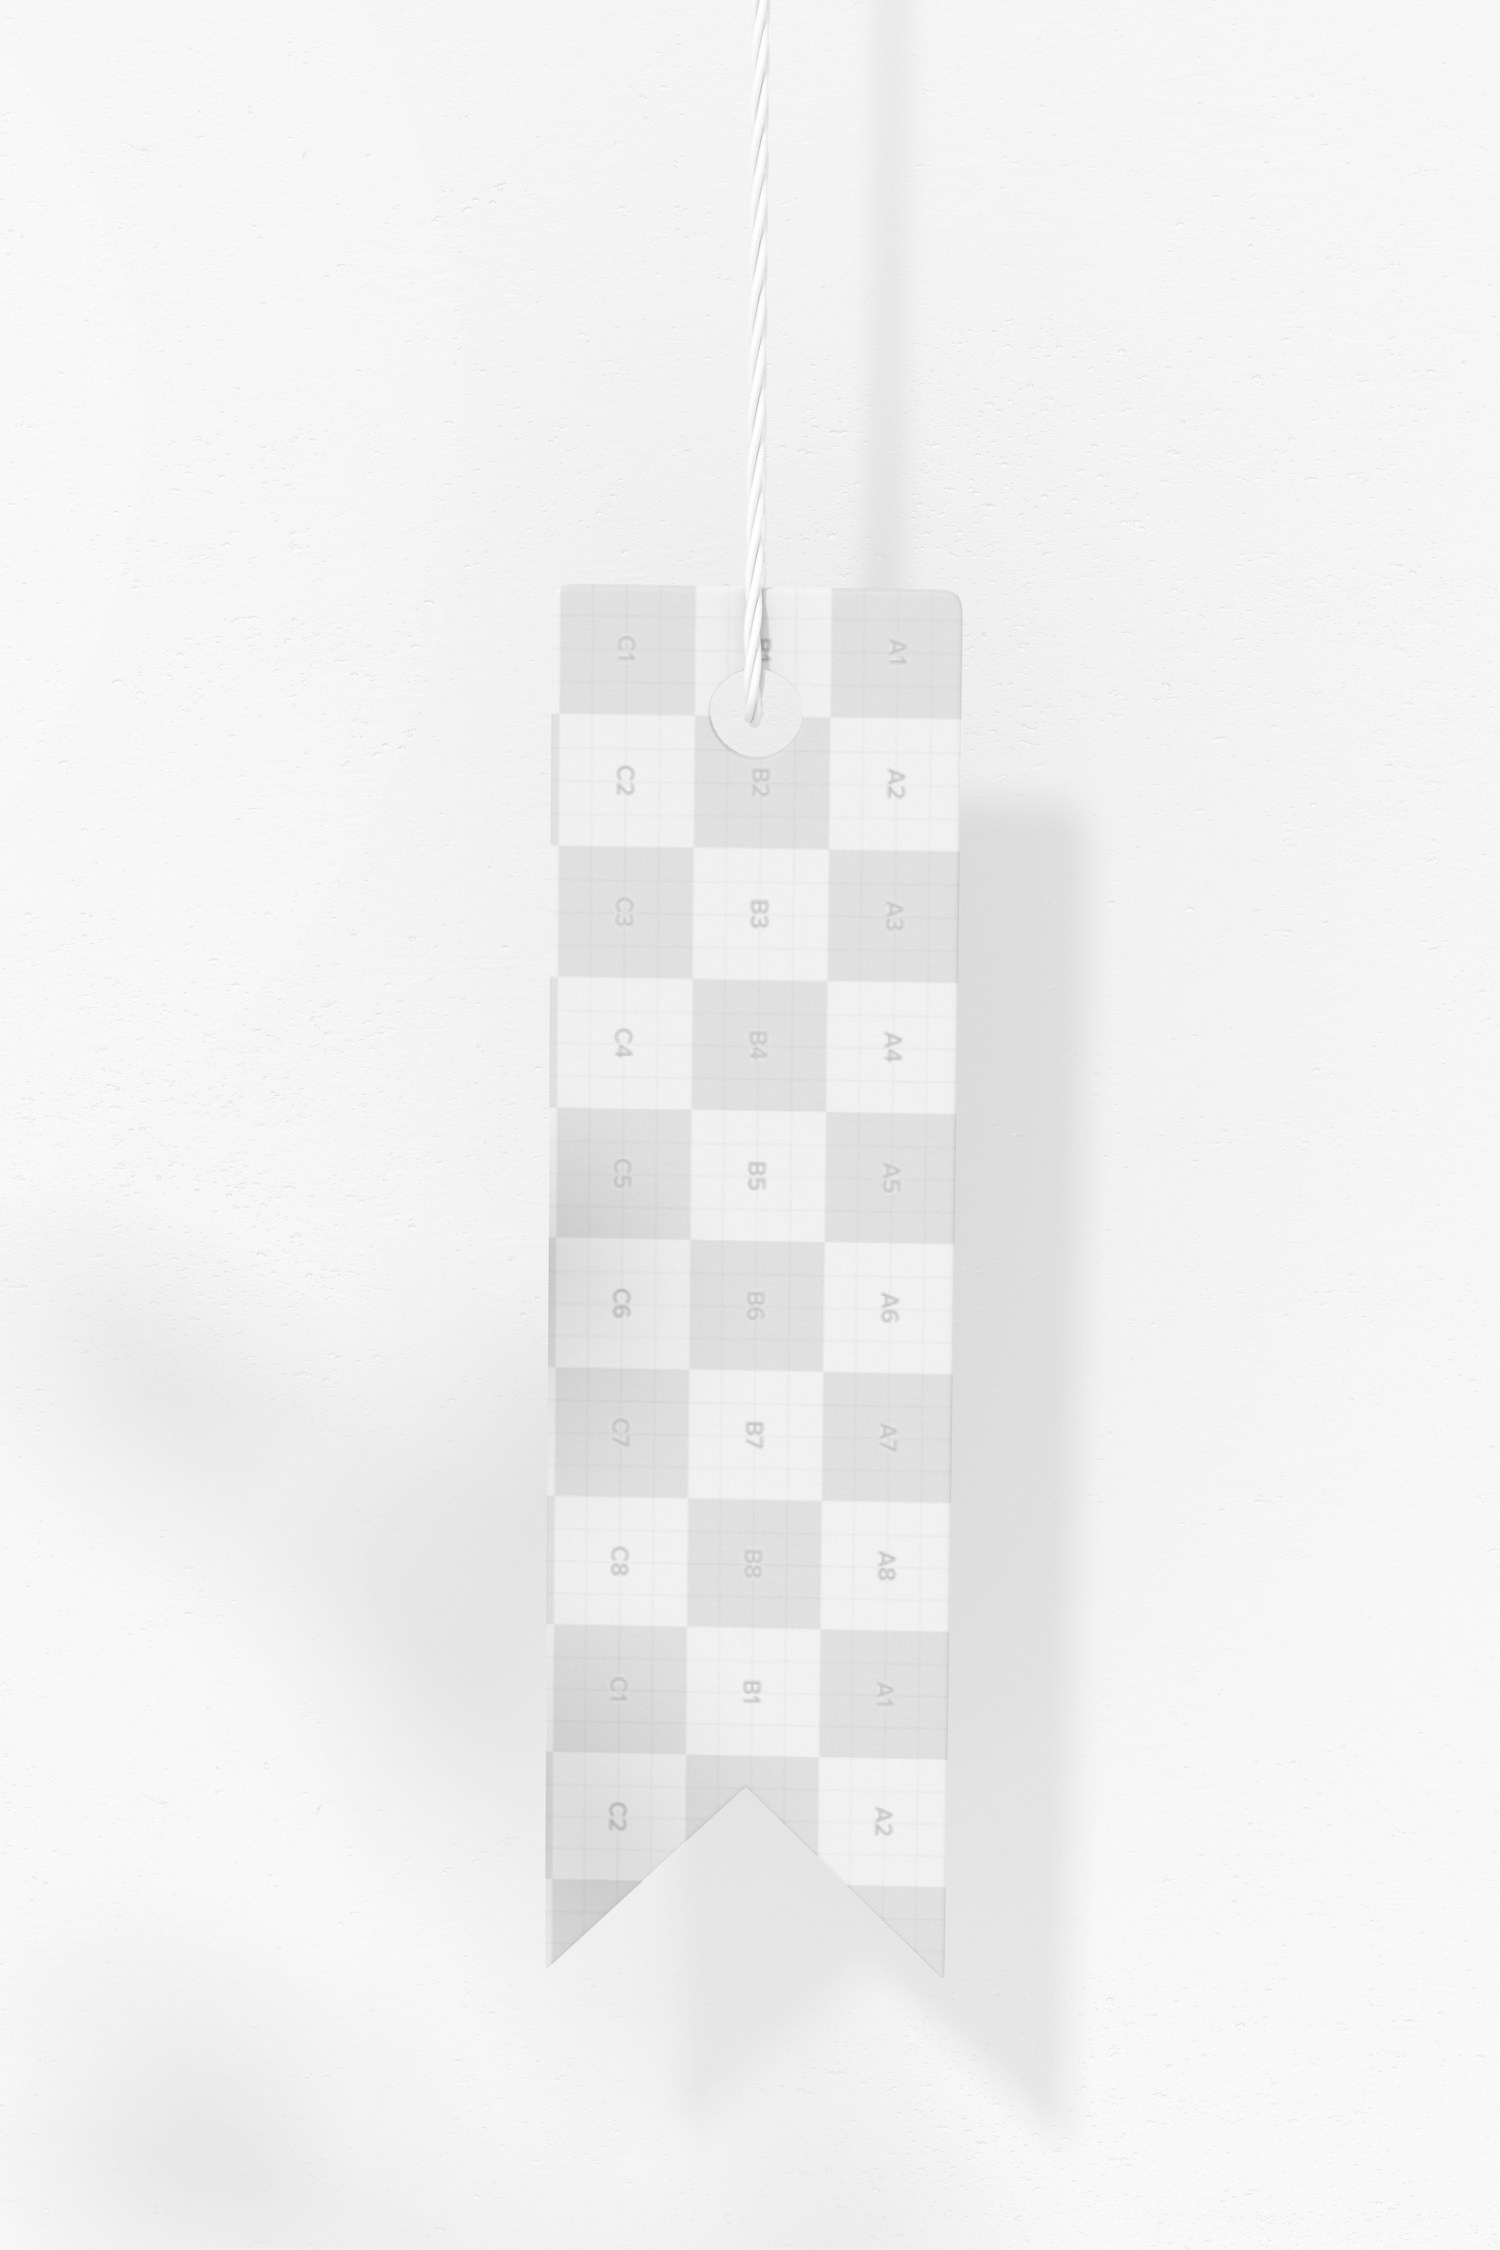 Maqueta de Etiqueta de Cartón con forma de Bandera, Colgando